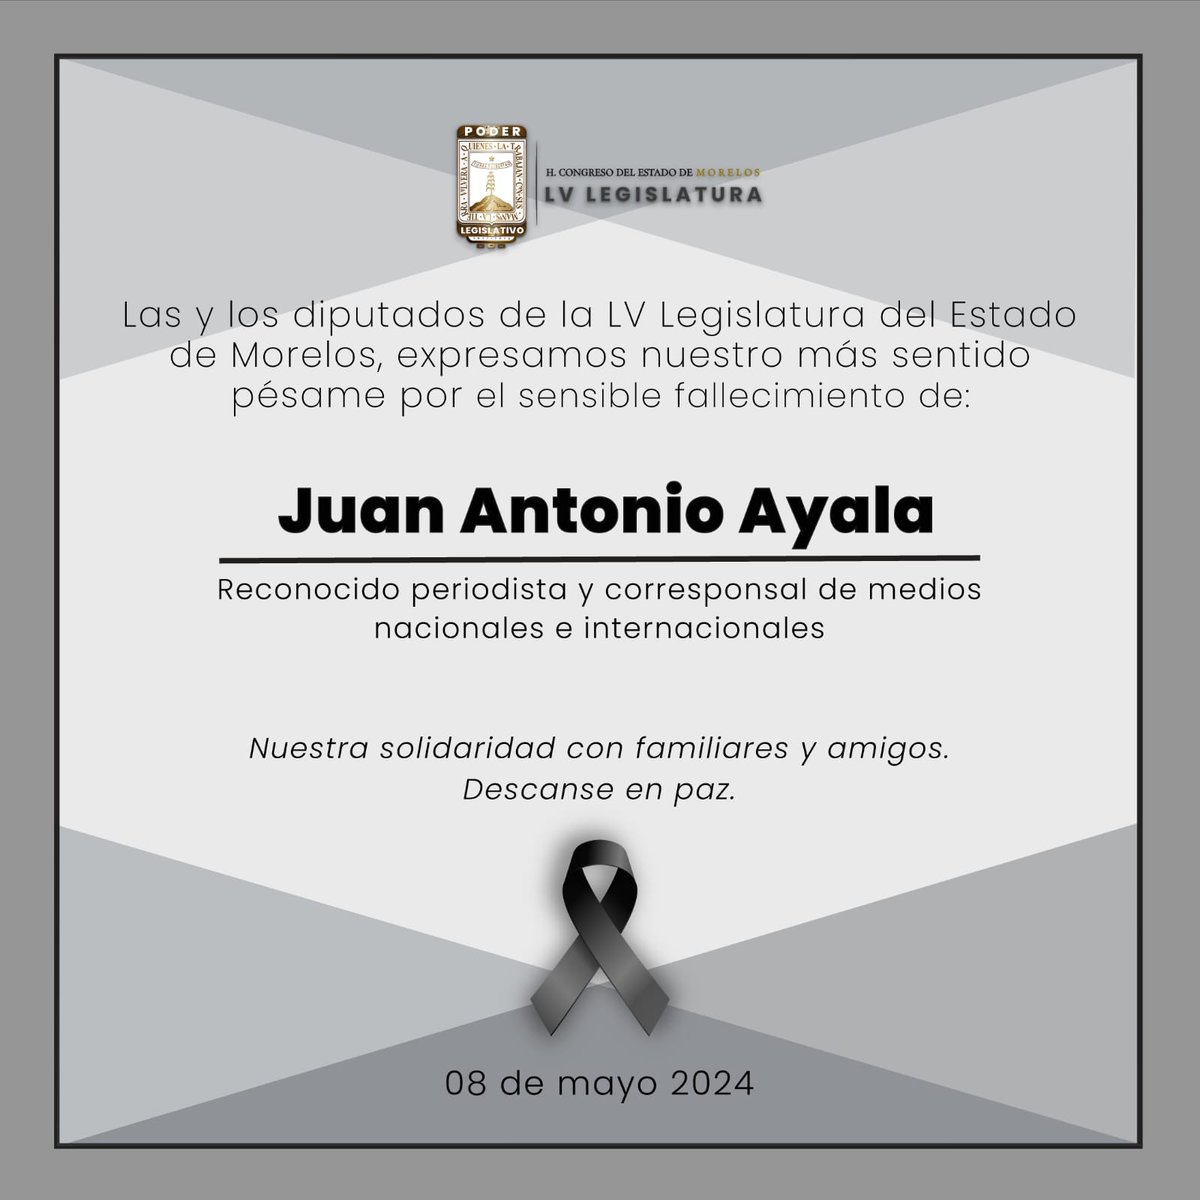 El Congreso del Estado de Morelos lamenta el sensible fallecimiento de Juan Antonio Ayala, reconocido periodista y corresponsal de medios nacionales e internacionales. Expresamos nuestras condolencias a familiares y amigos. Descanse en paz. 🕊️